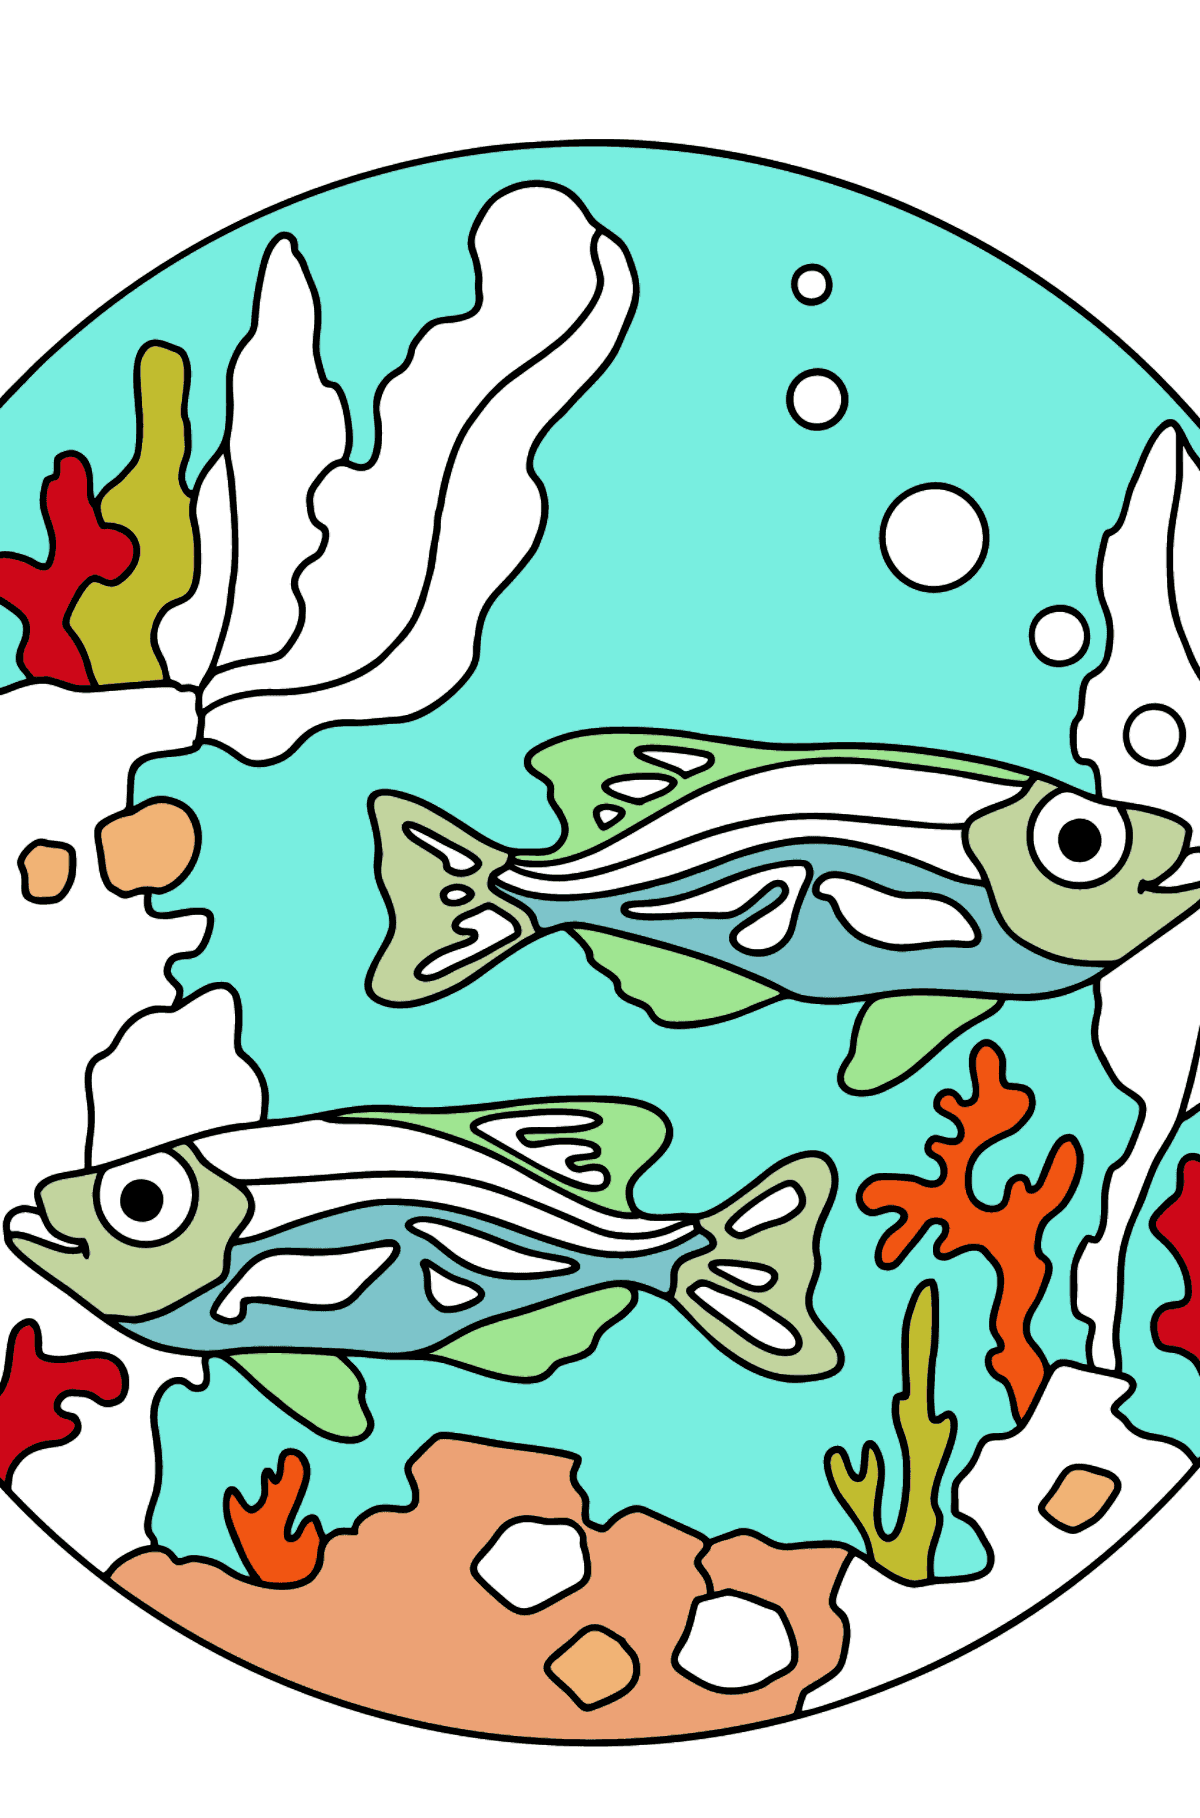 Målarbild akvarium (svår) - Målarbilder För barn